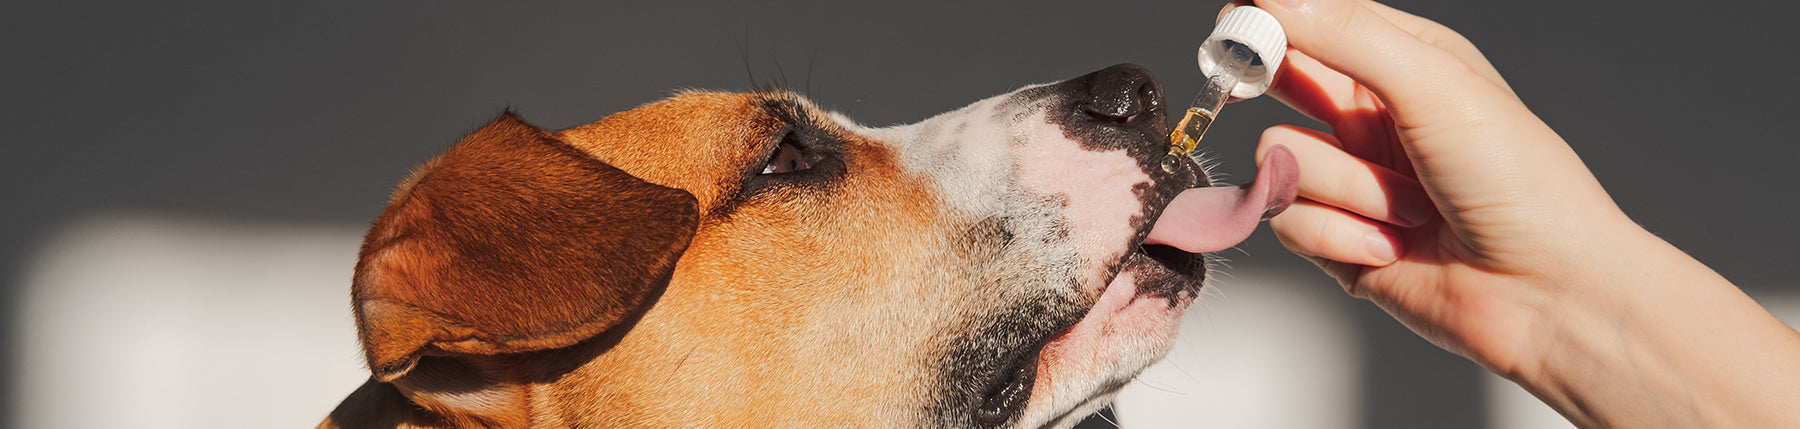 CBD für Hunde - Dosierung und Anwendung